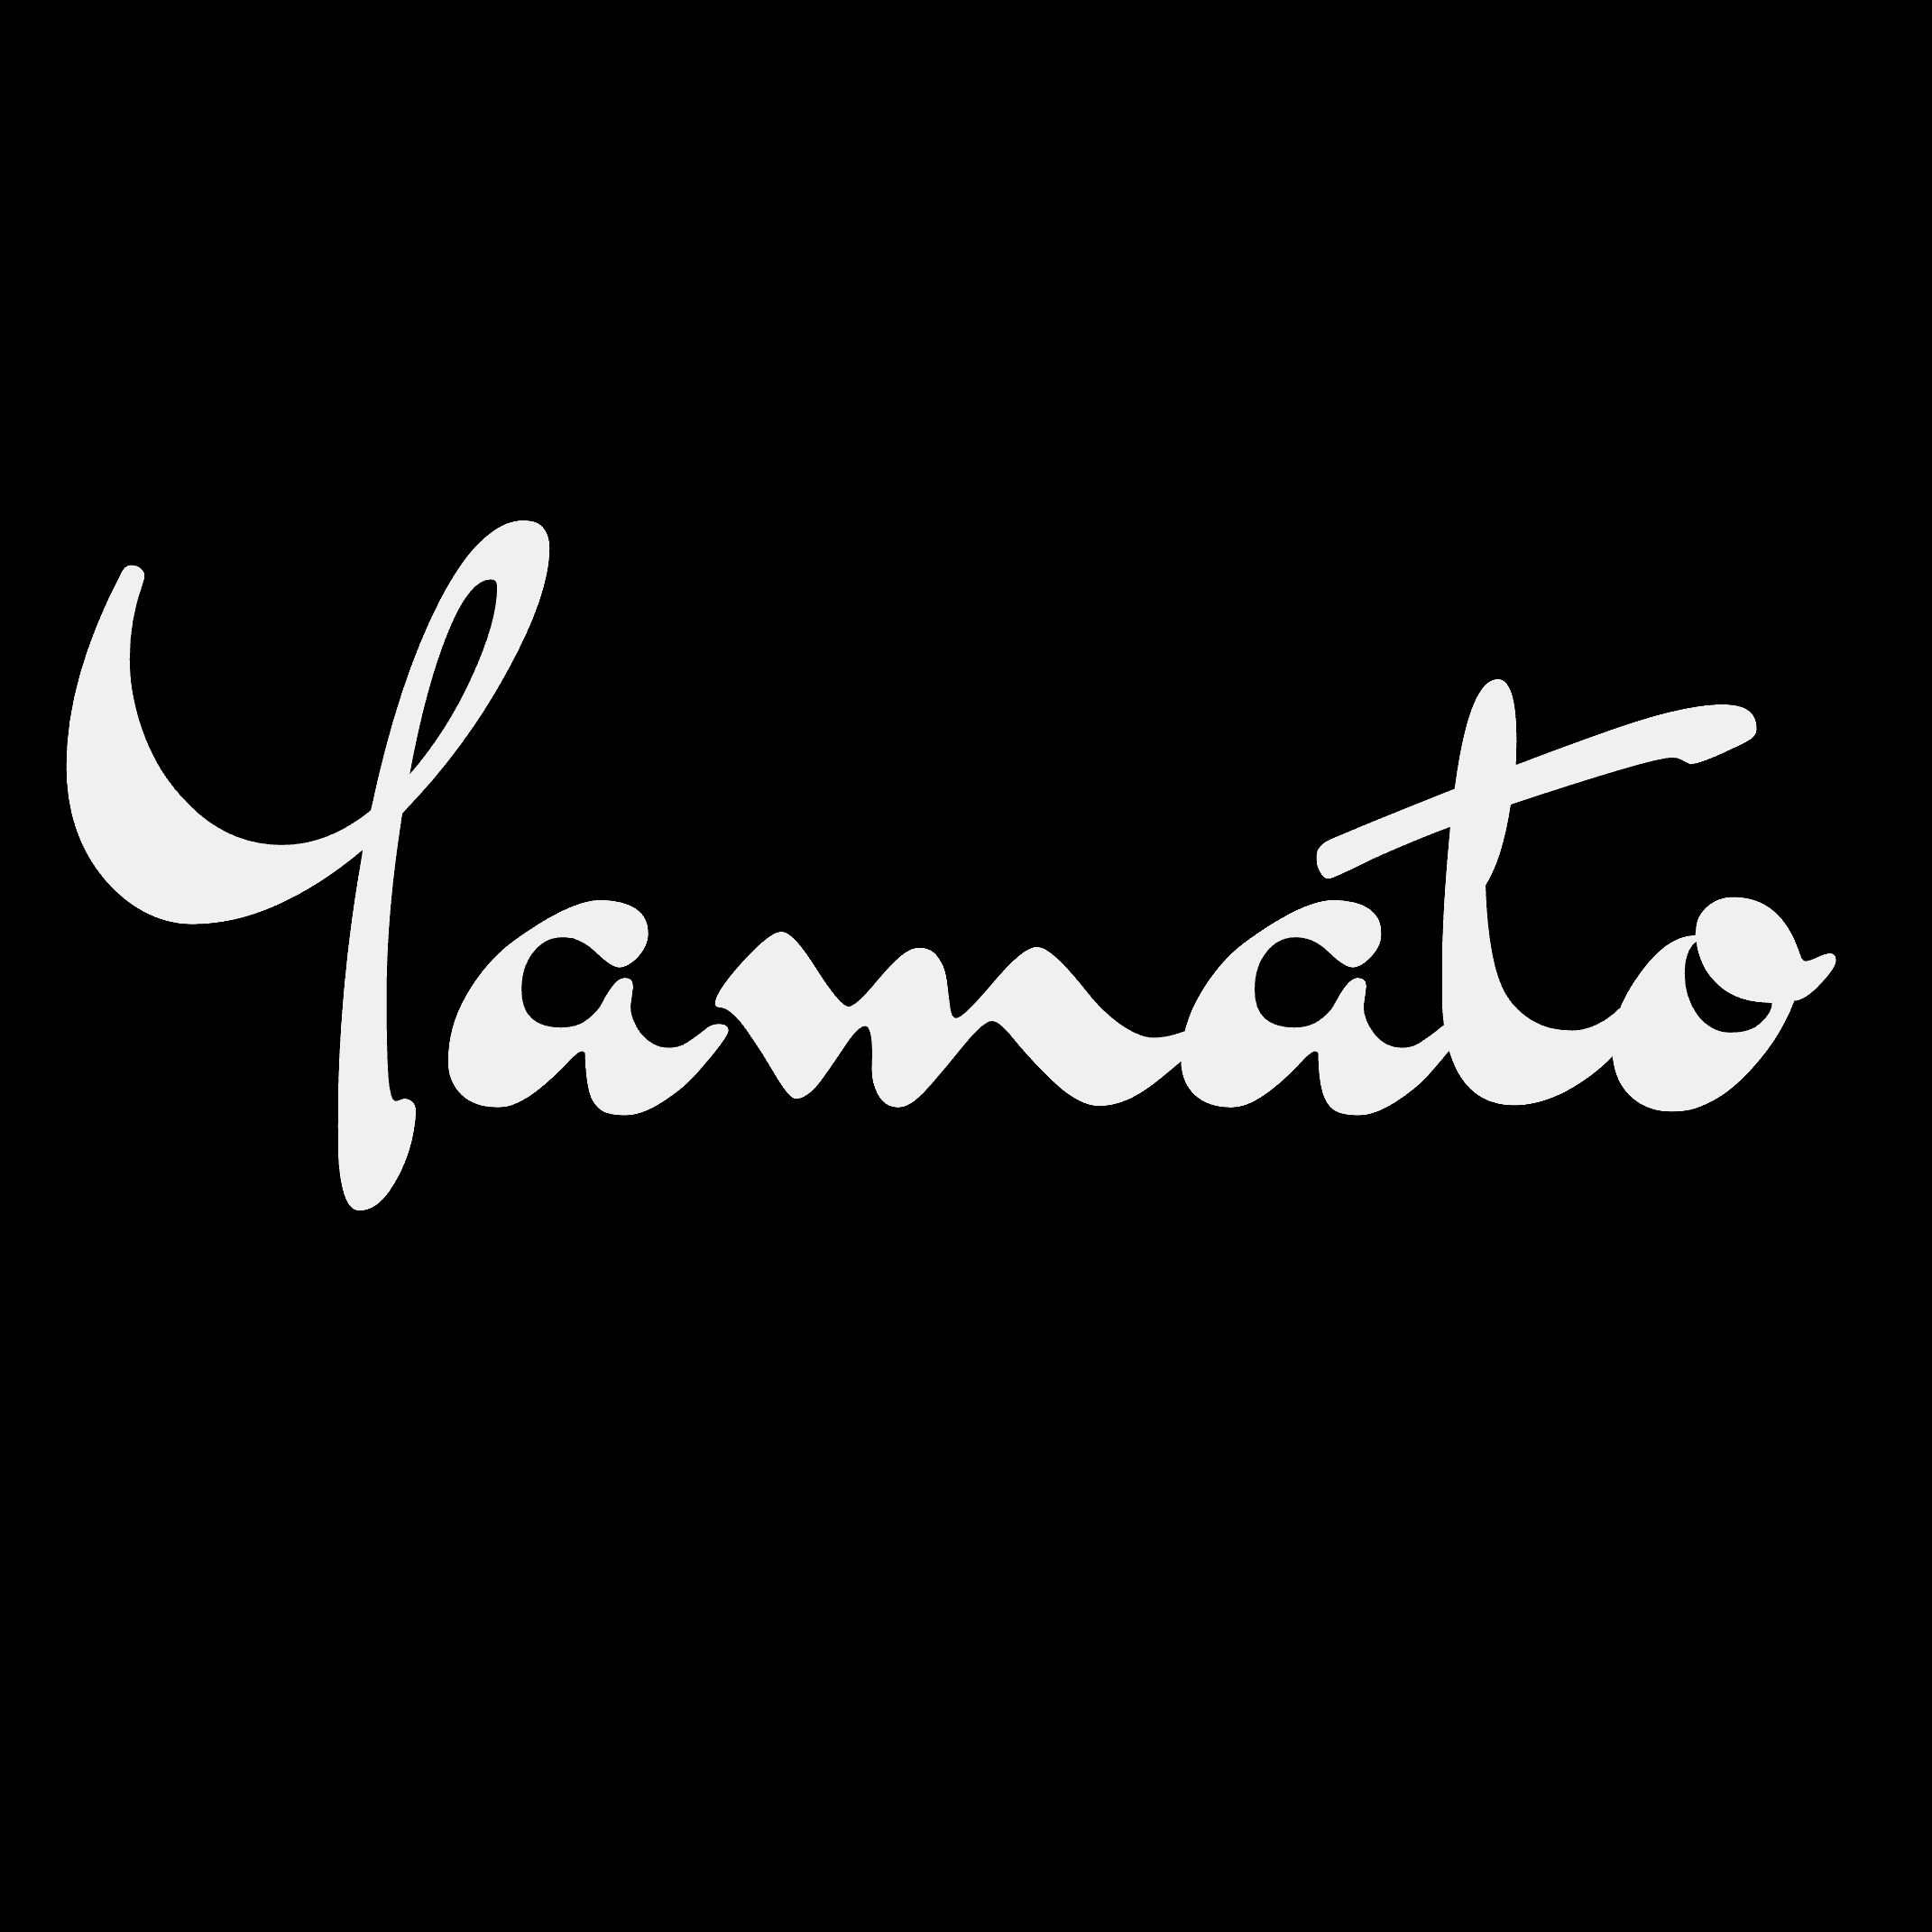 yamato_studio 横幅